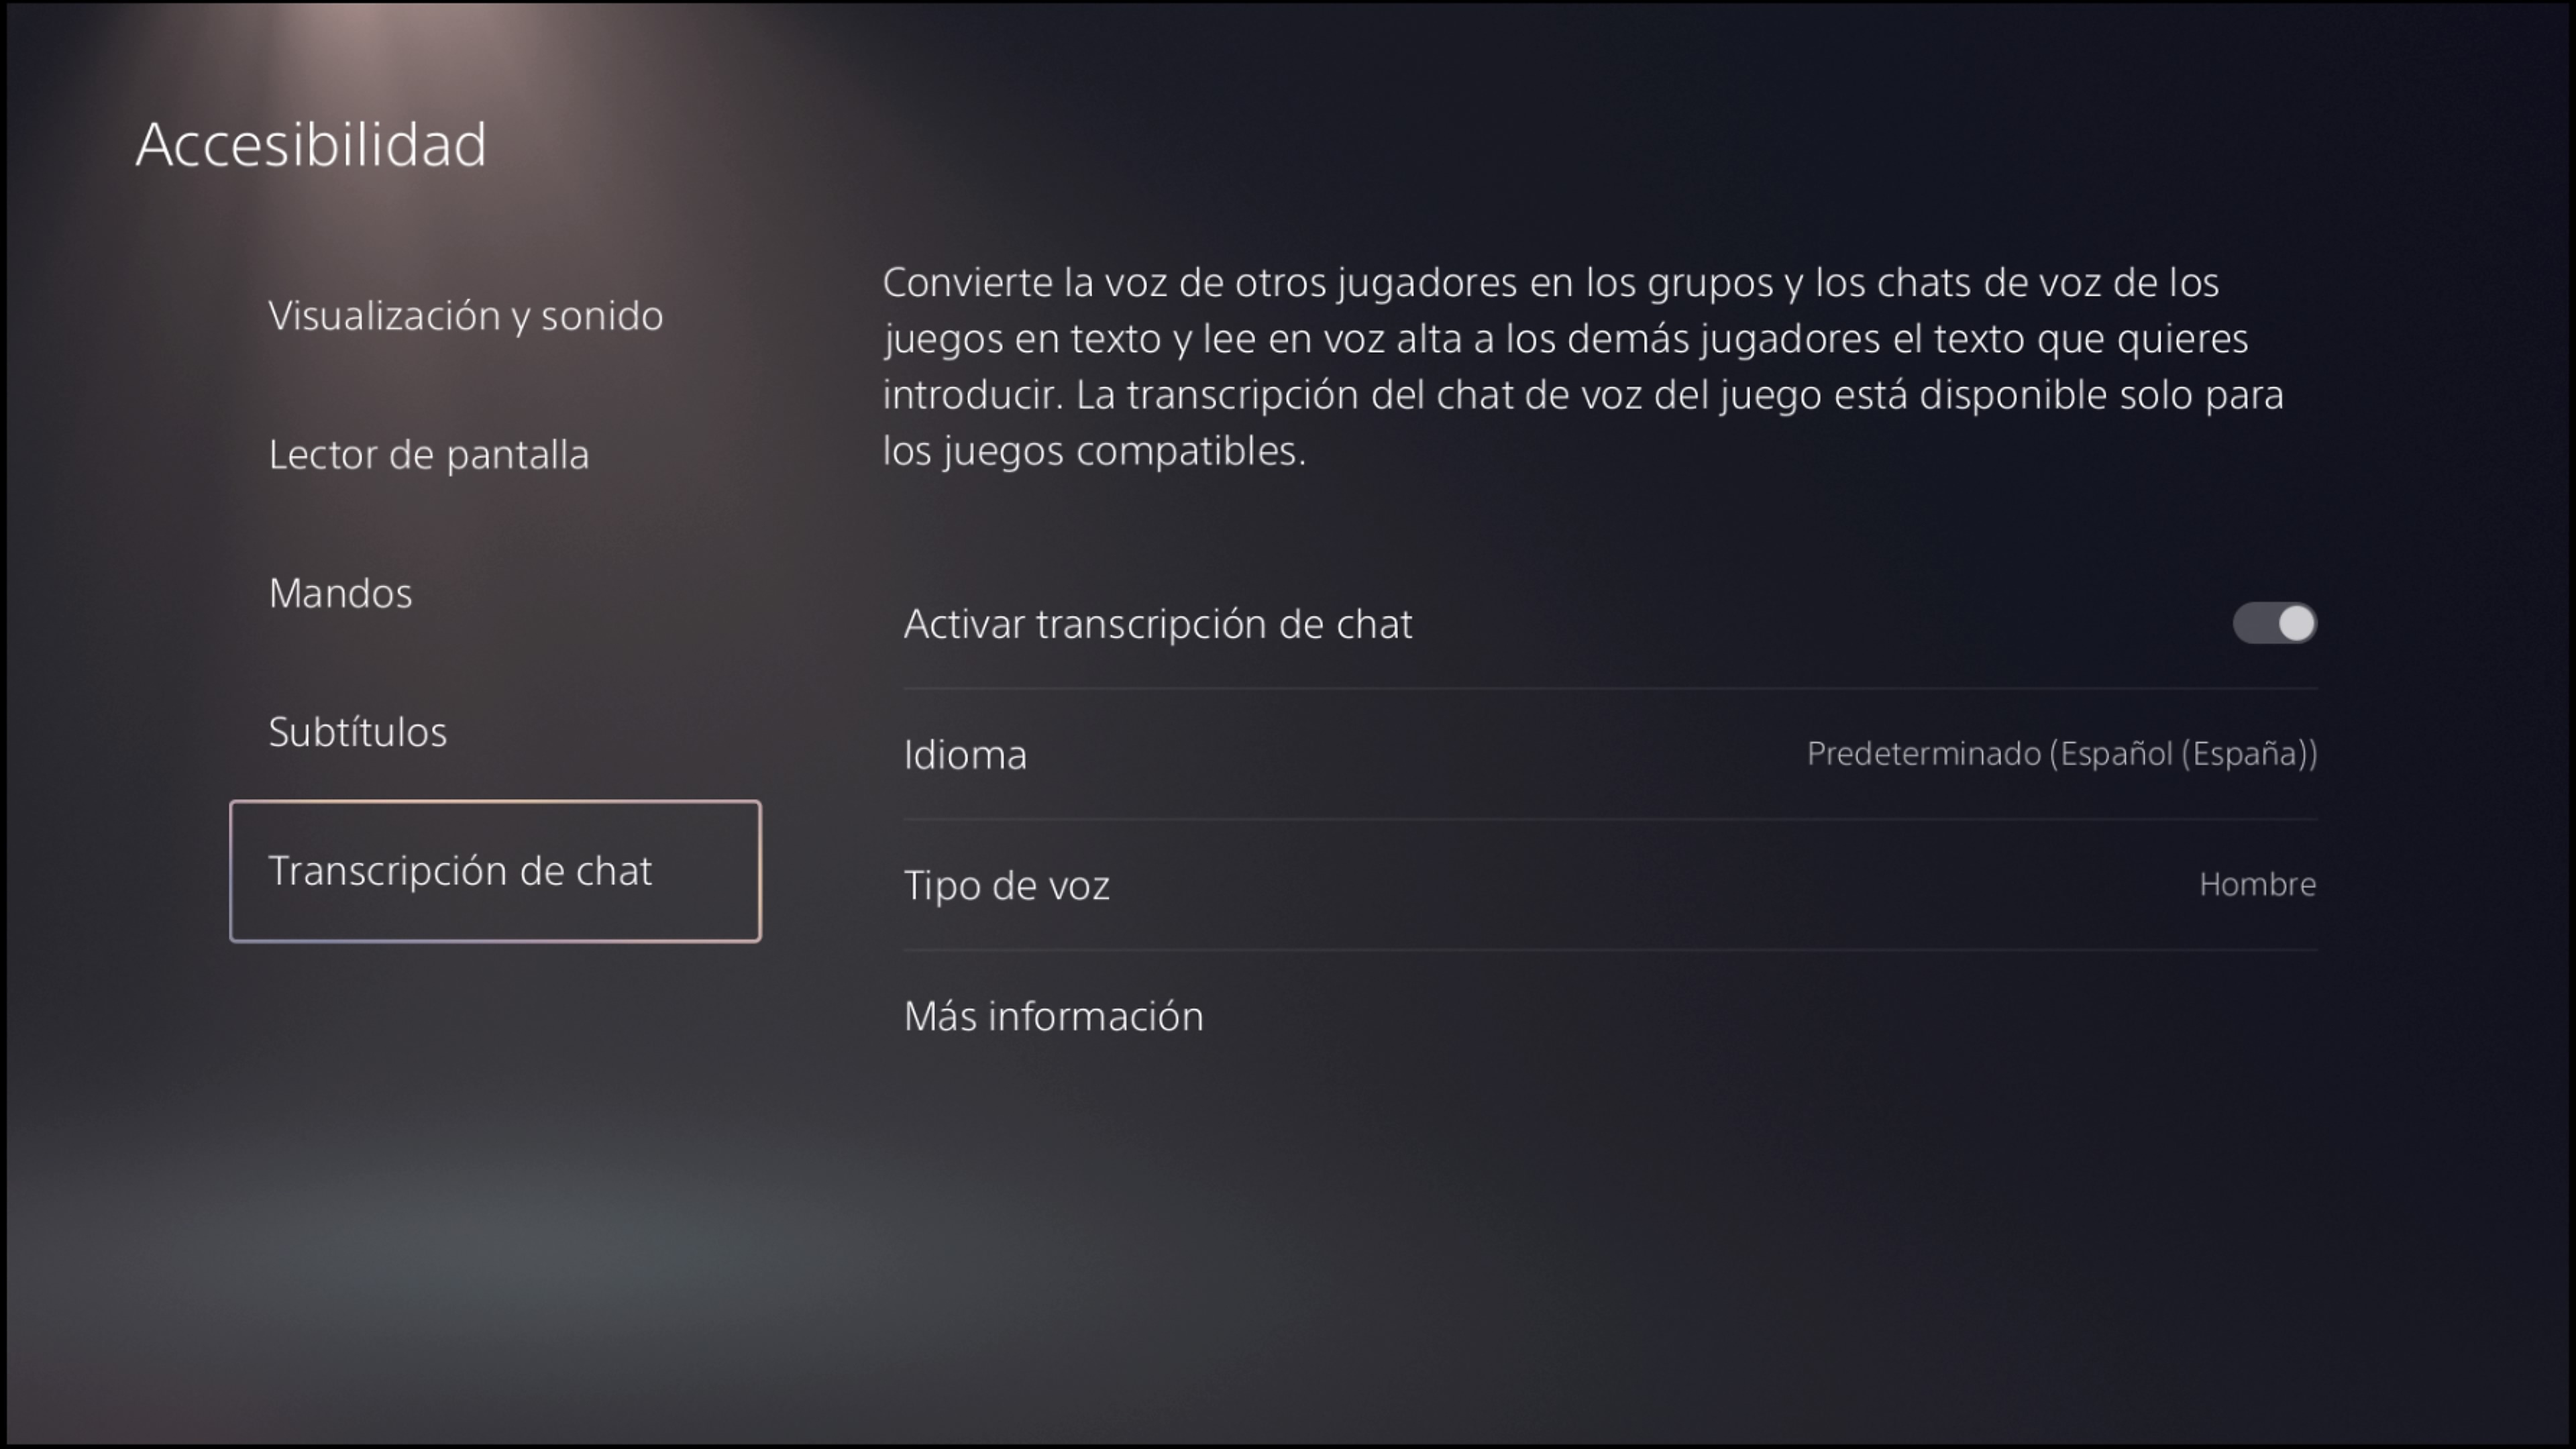 Accesibilidad en PS5 - Transcripción de chat